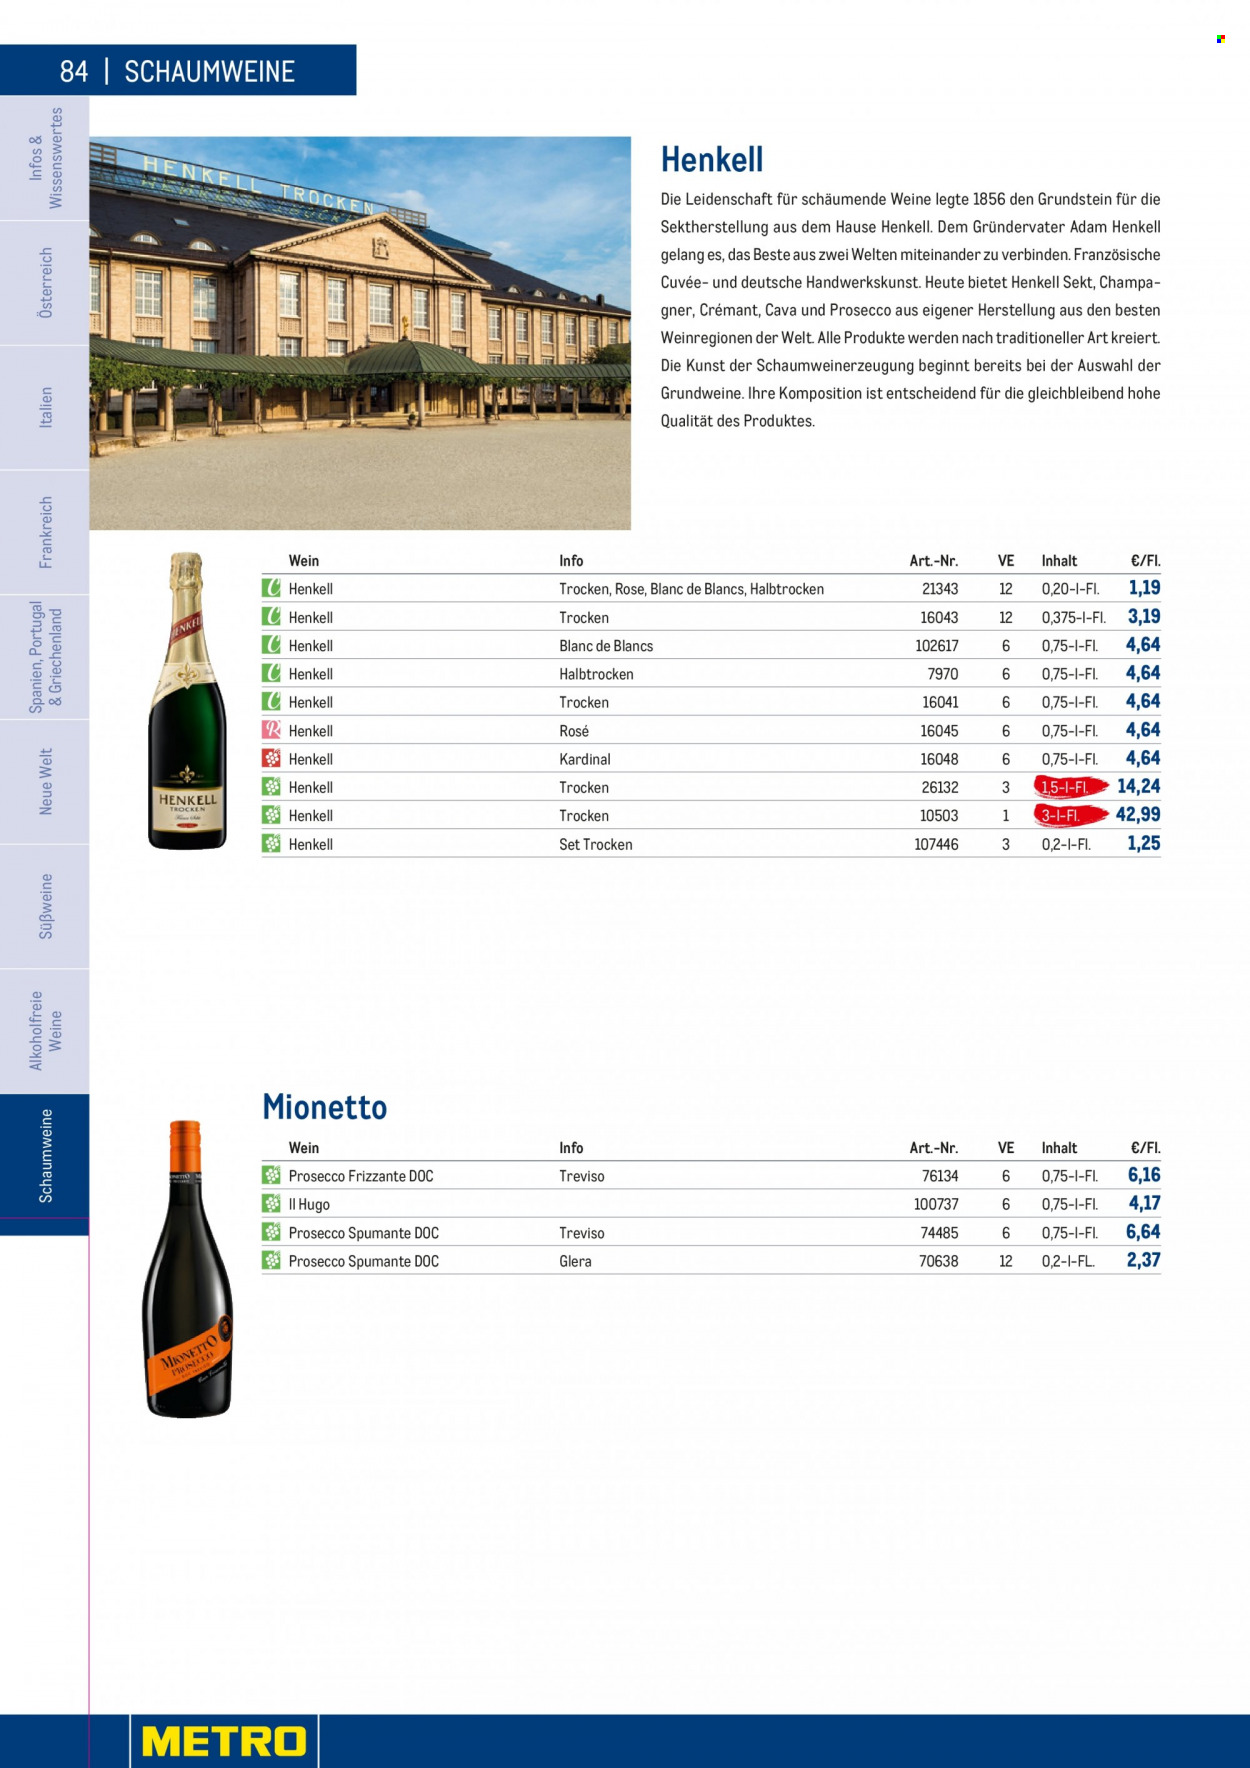 Angebote Metro - 7.9.2022 - 30.4.2023 - Verkaufsprodukte - Wein, Sekt, Vino Spumante, Champagne, Cava, Prosecco, Henkell, Henkell Trocken, Alkohol, Frizzante, Mionetto. Seite 84.